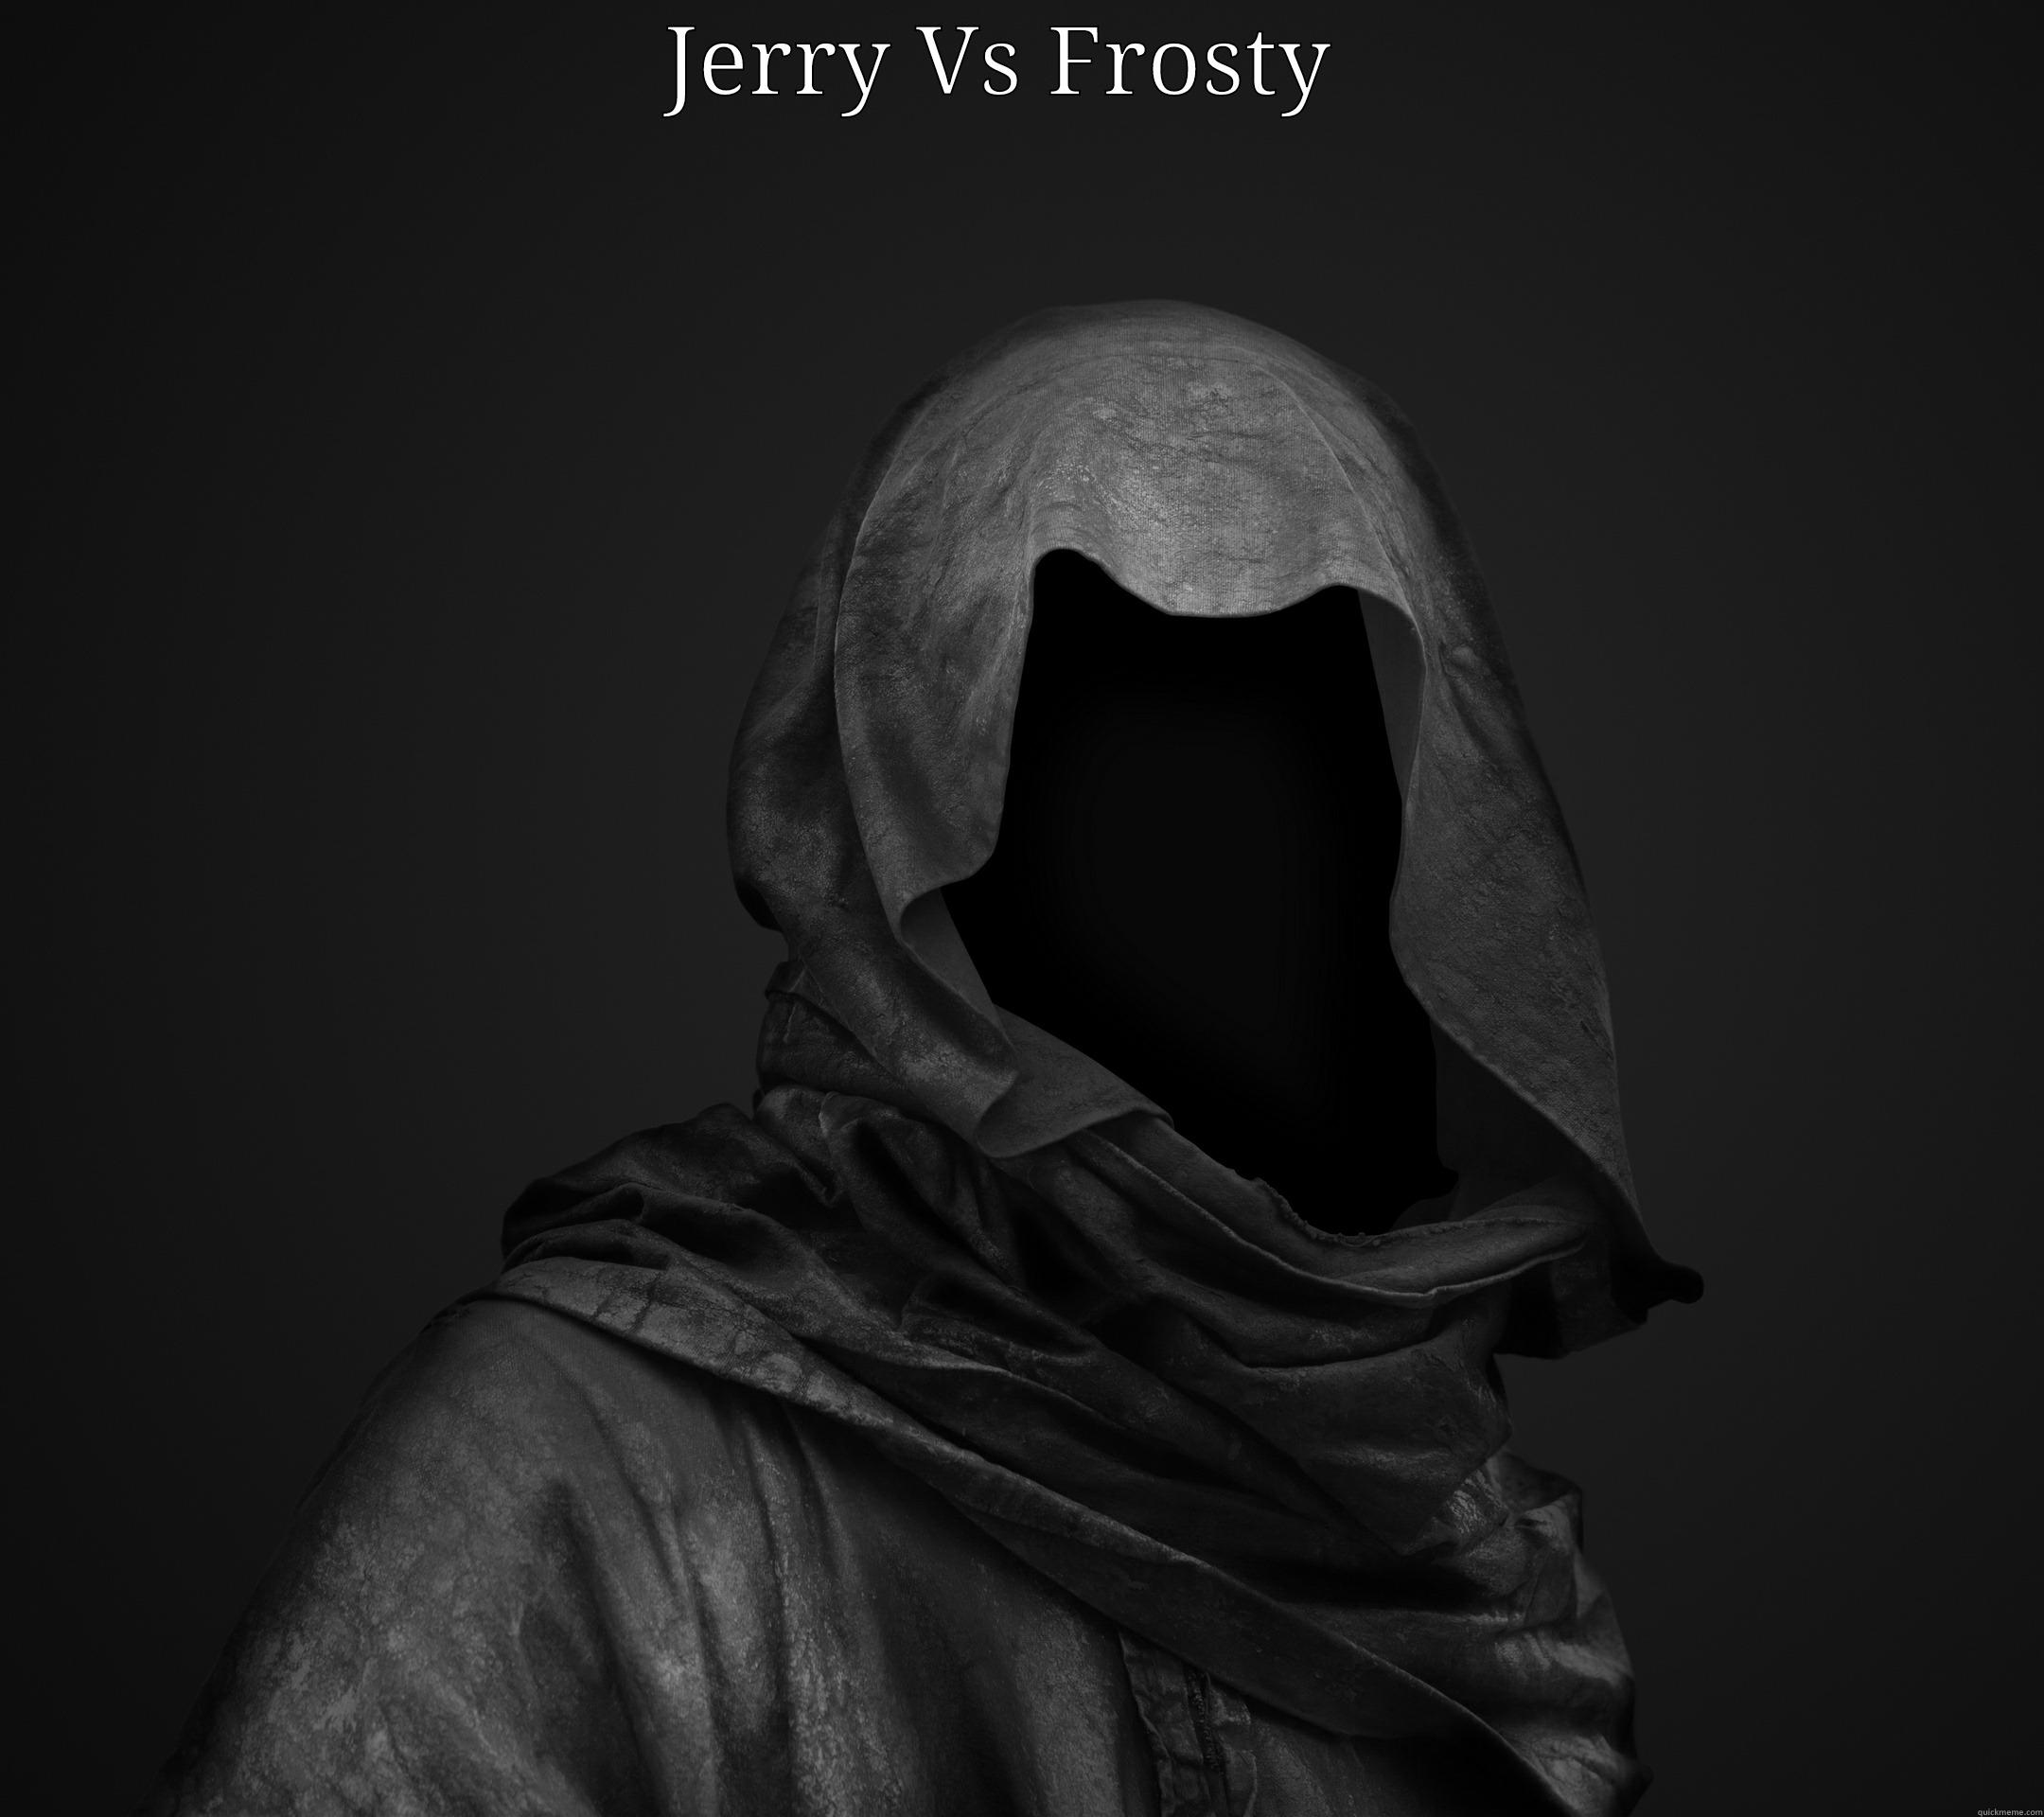 Jerry vs Frosty  - JERRY VS FROSTY   Misc